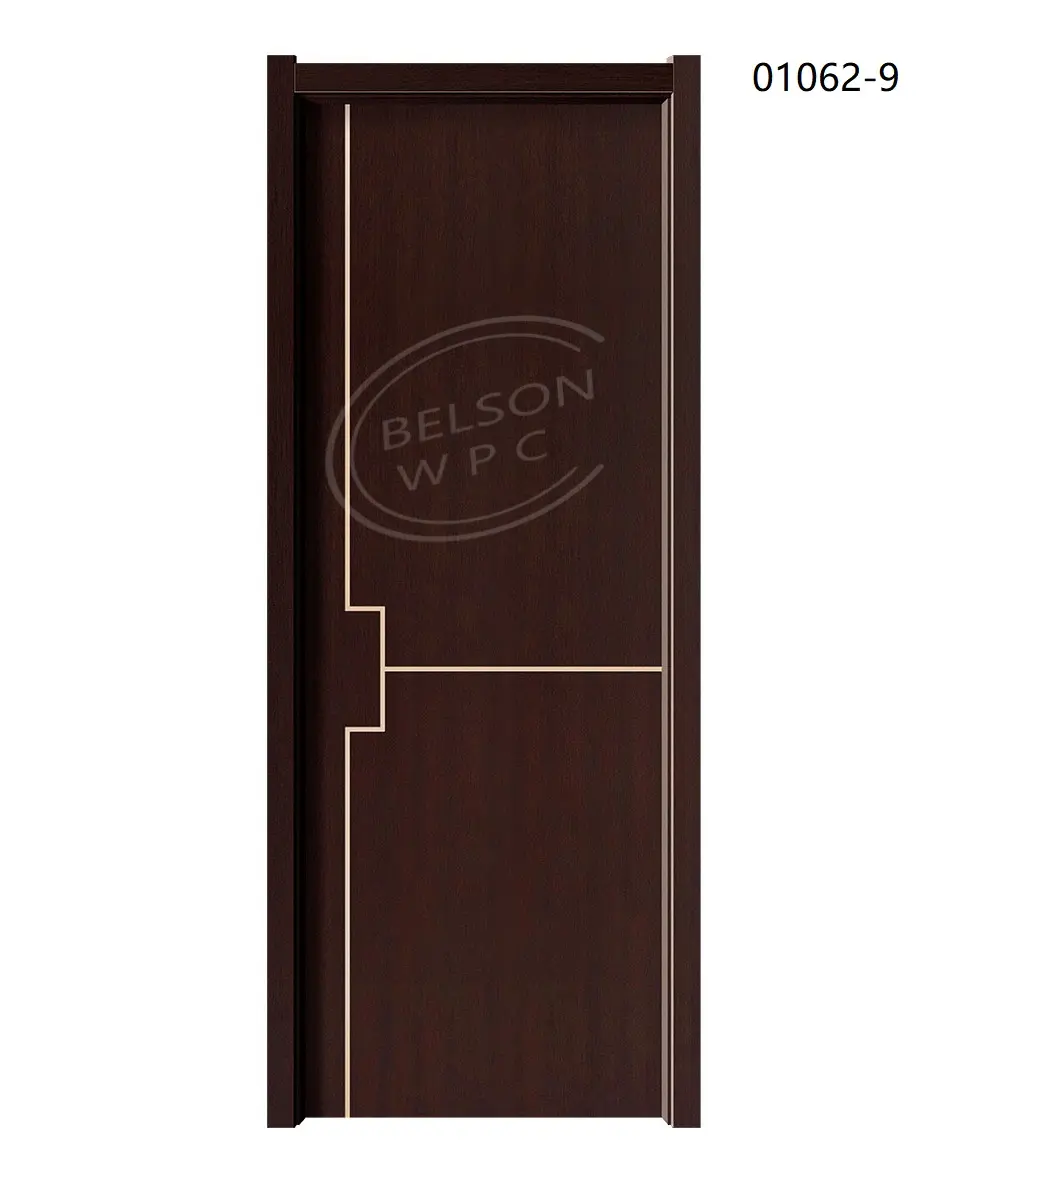 Thiết kế mới nhất giá rẻ nhất chất lượng tốt Nhà Phong Cách WPC cửa gỗ cửa hiện đại sử dụng nhà